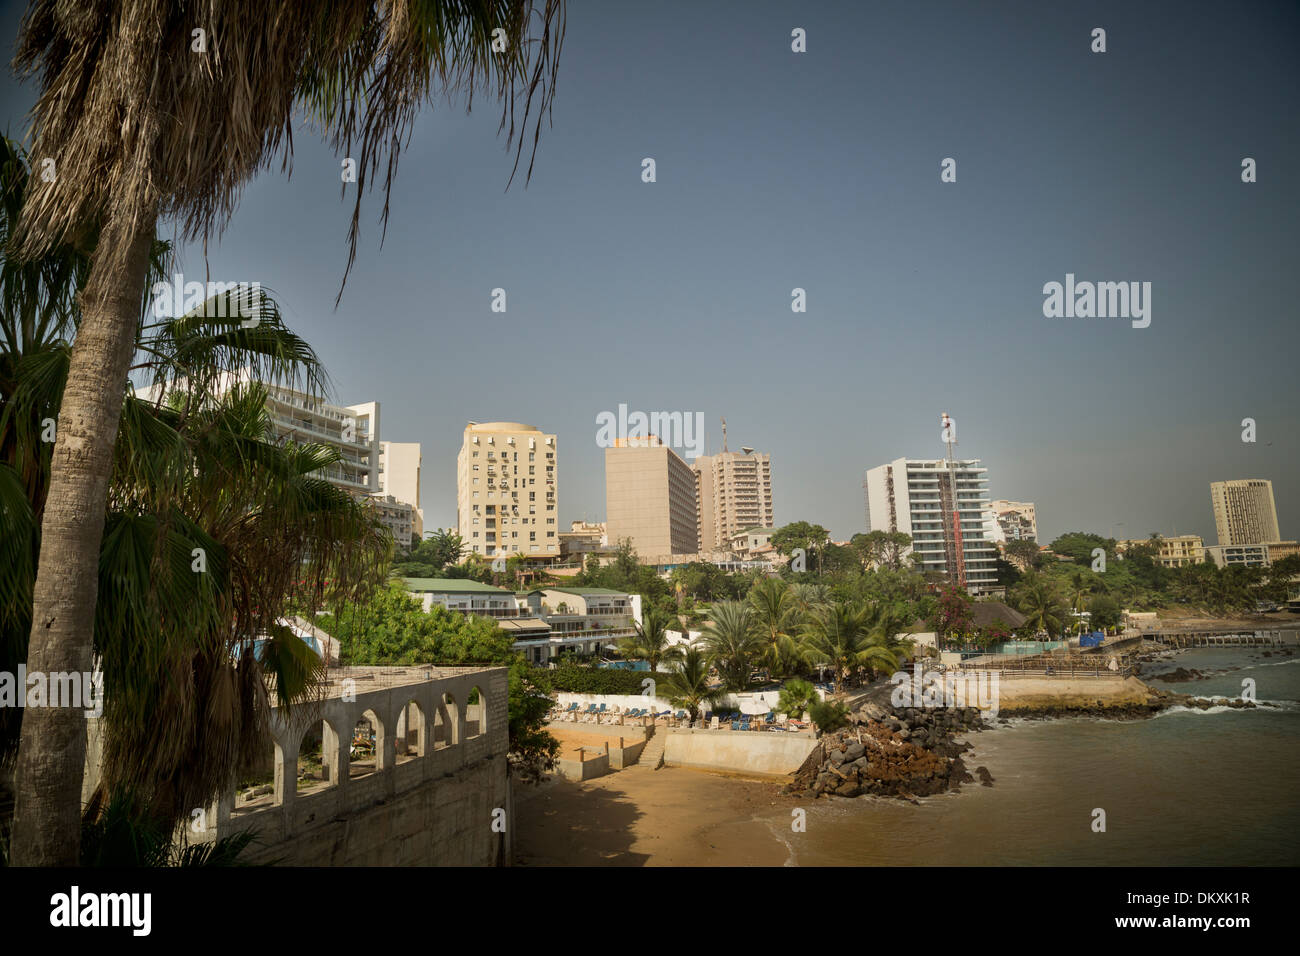 Dakar, Senegal skyline Stock Photo